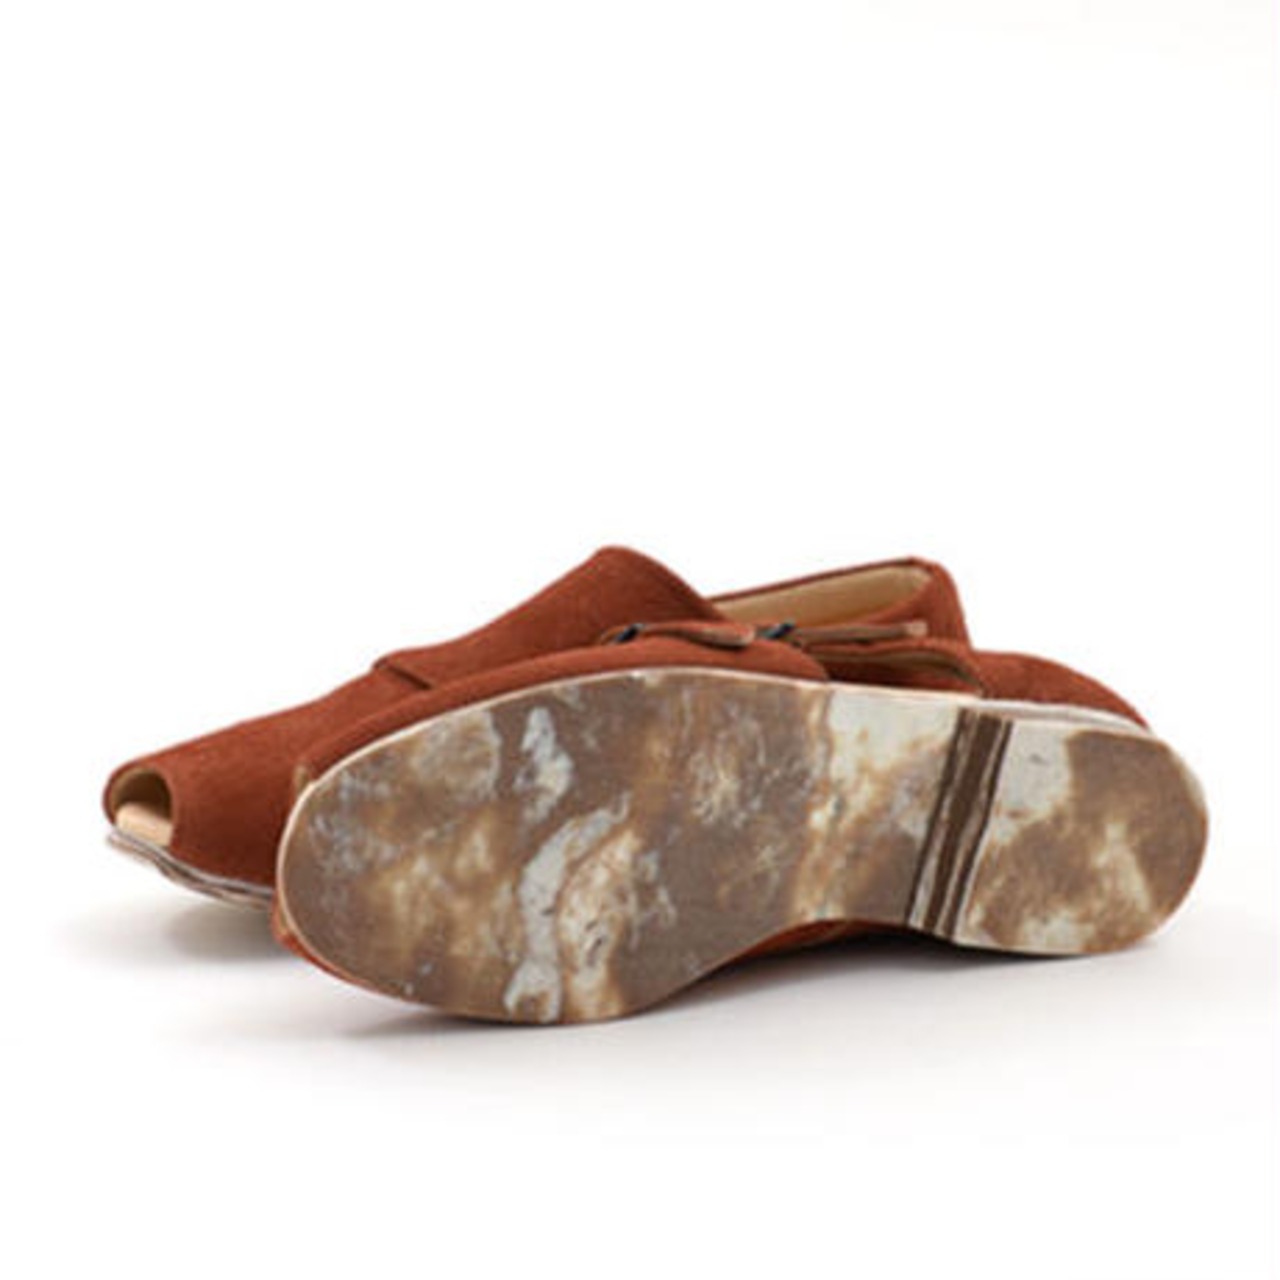 【 UNIONINI 】double monk strap shoes  brick brown   22.5-24cm